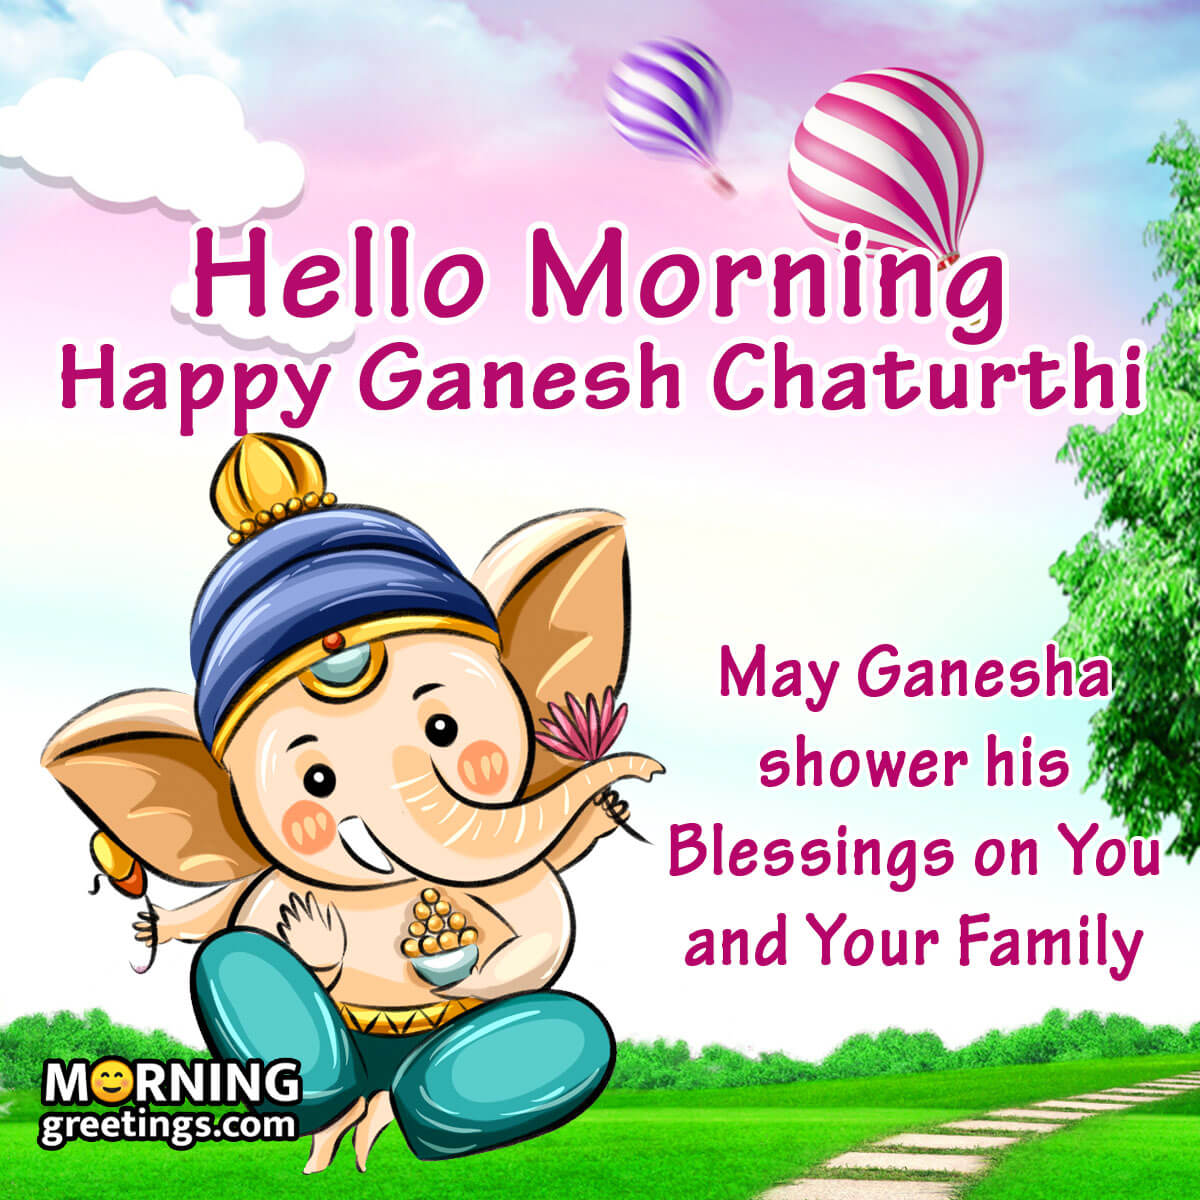 Hello Morning Happy Ganesh Chaturthi